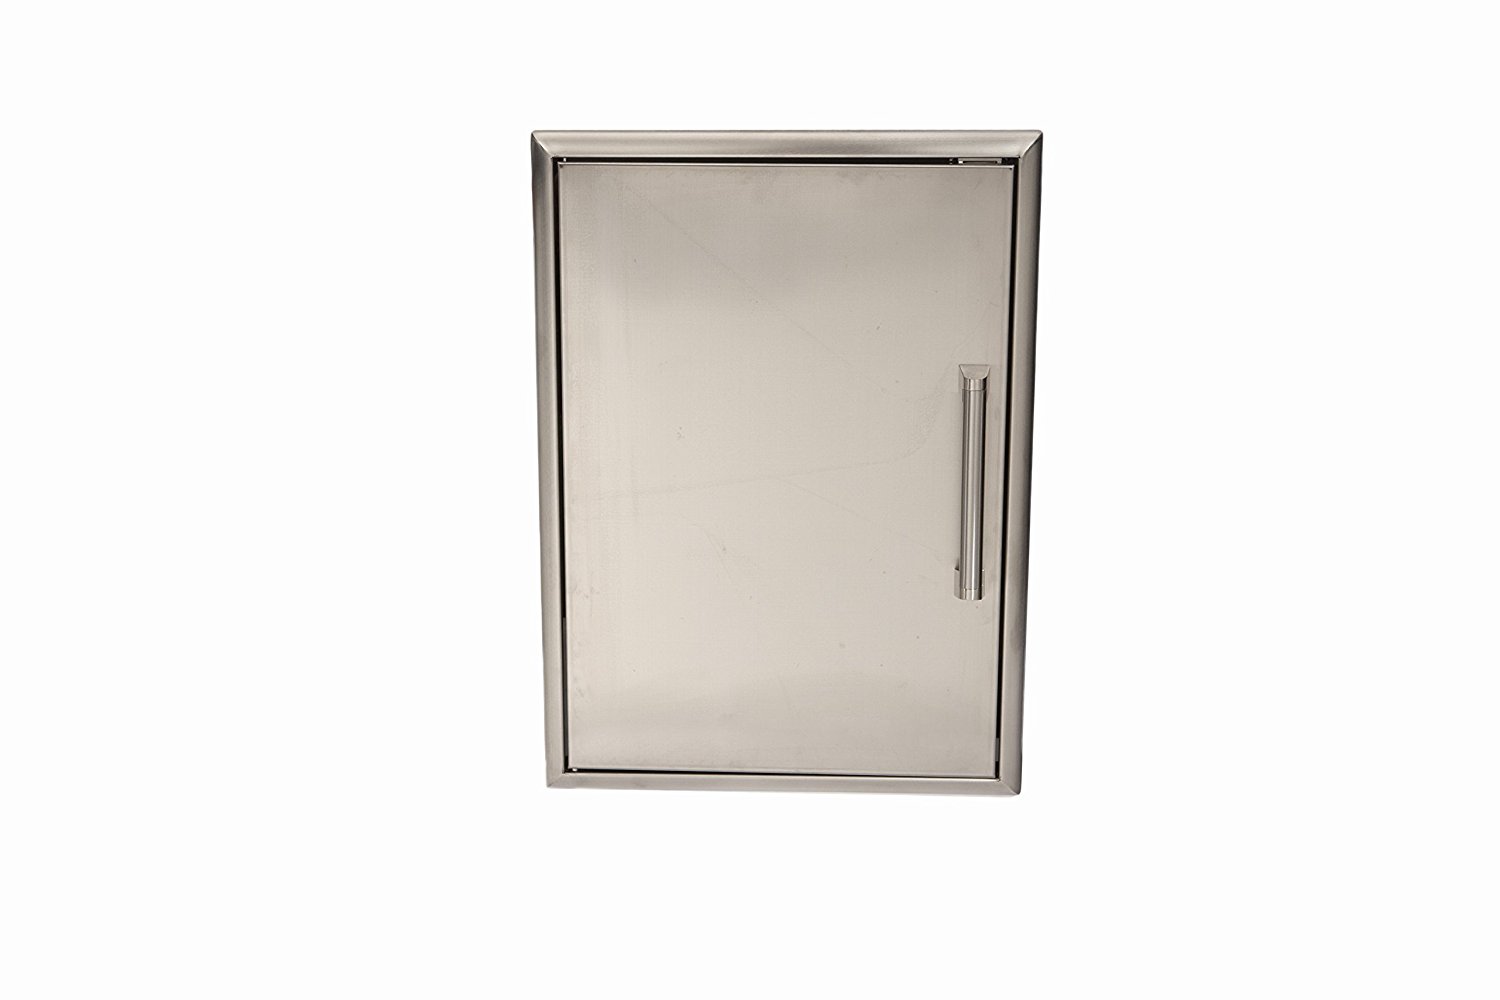 Coyote Single Access Door, 24″x 14″/60 x 35 cm, Stainless Steel